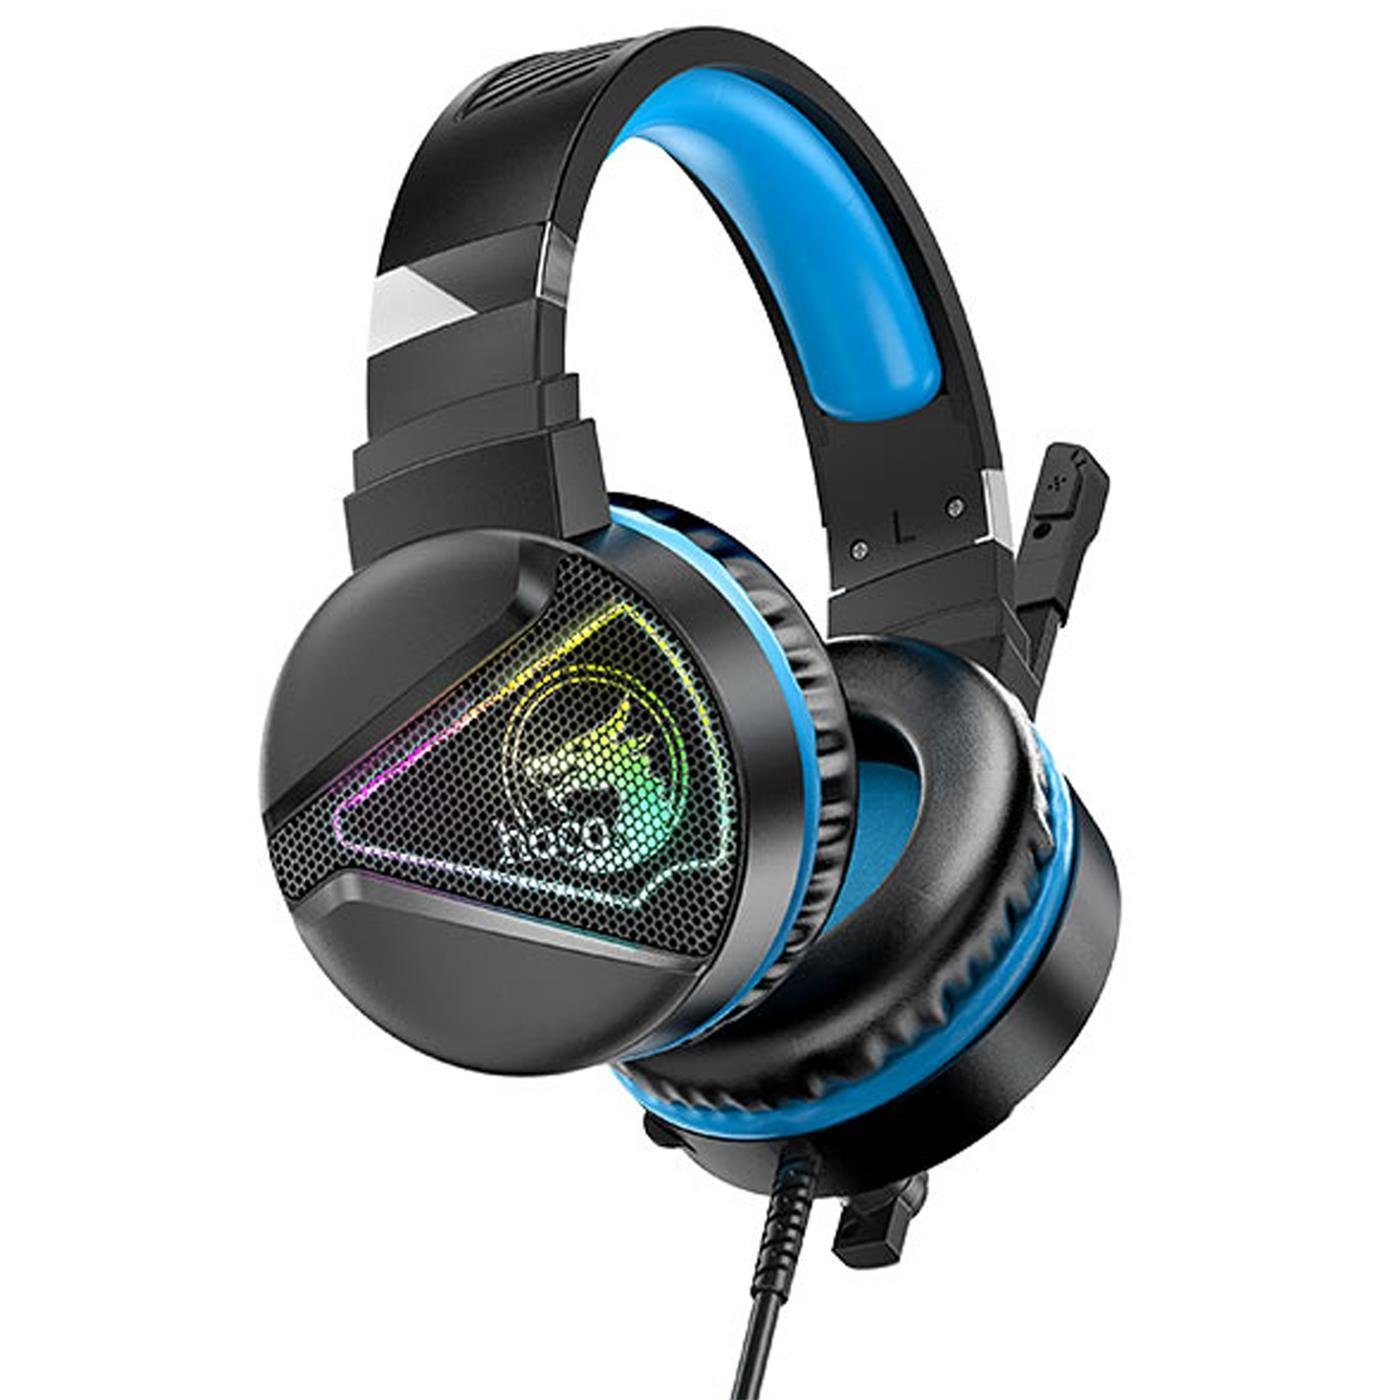 HOCO W104 Gaming PC-Headset LED Kopfhörer mit Beleuchtung) und Stereo (Stylische Mikrofon Gaming Blau